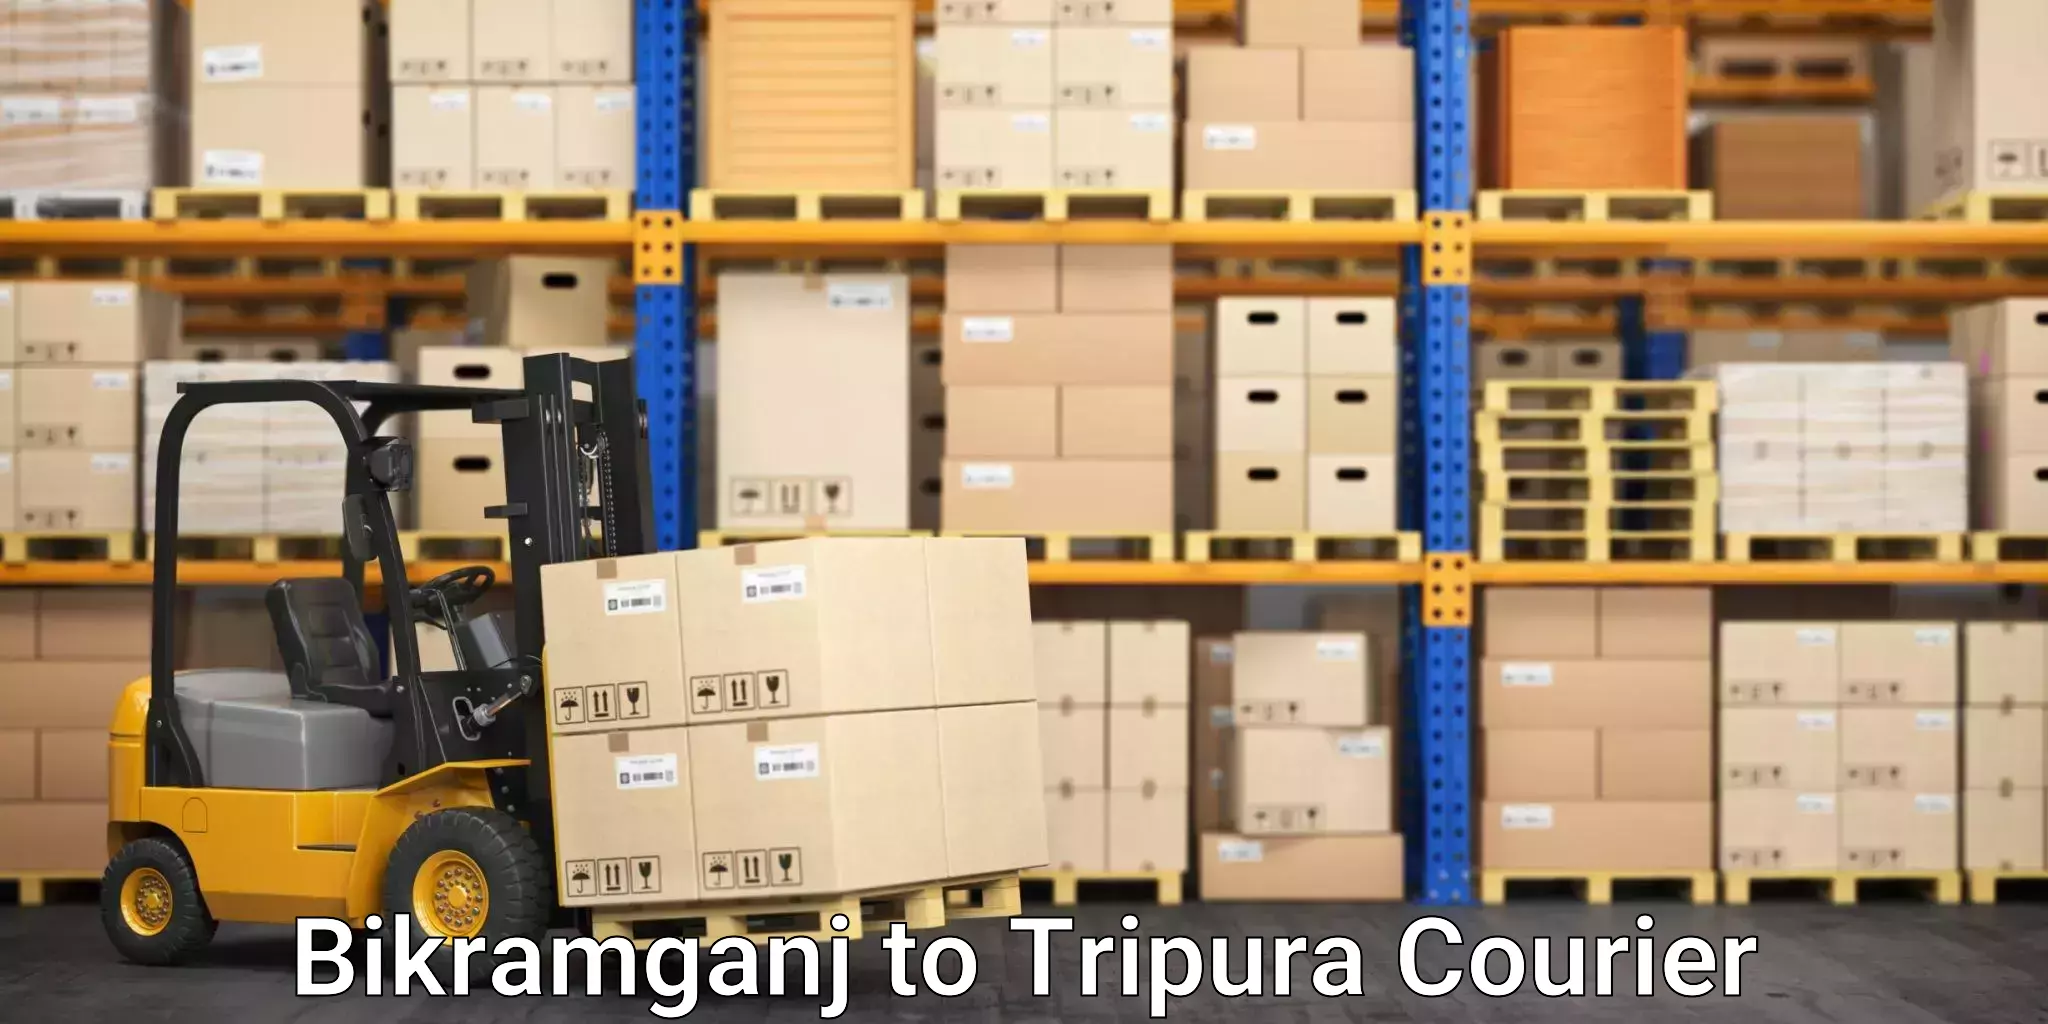 Furniture transport company in Bikramganj to Tripura